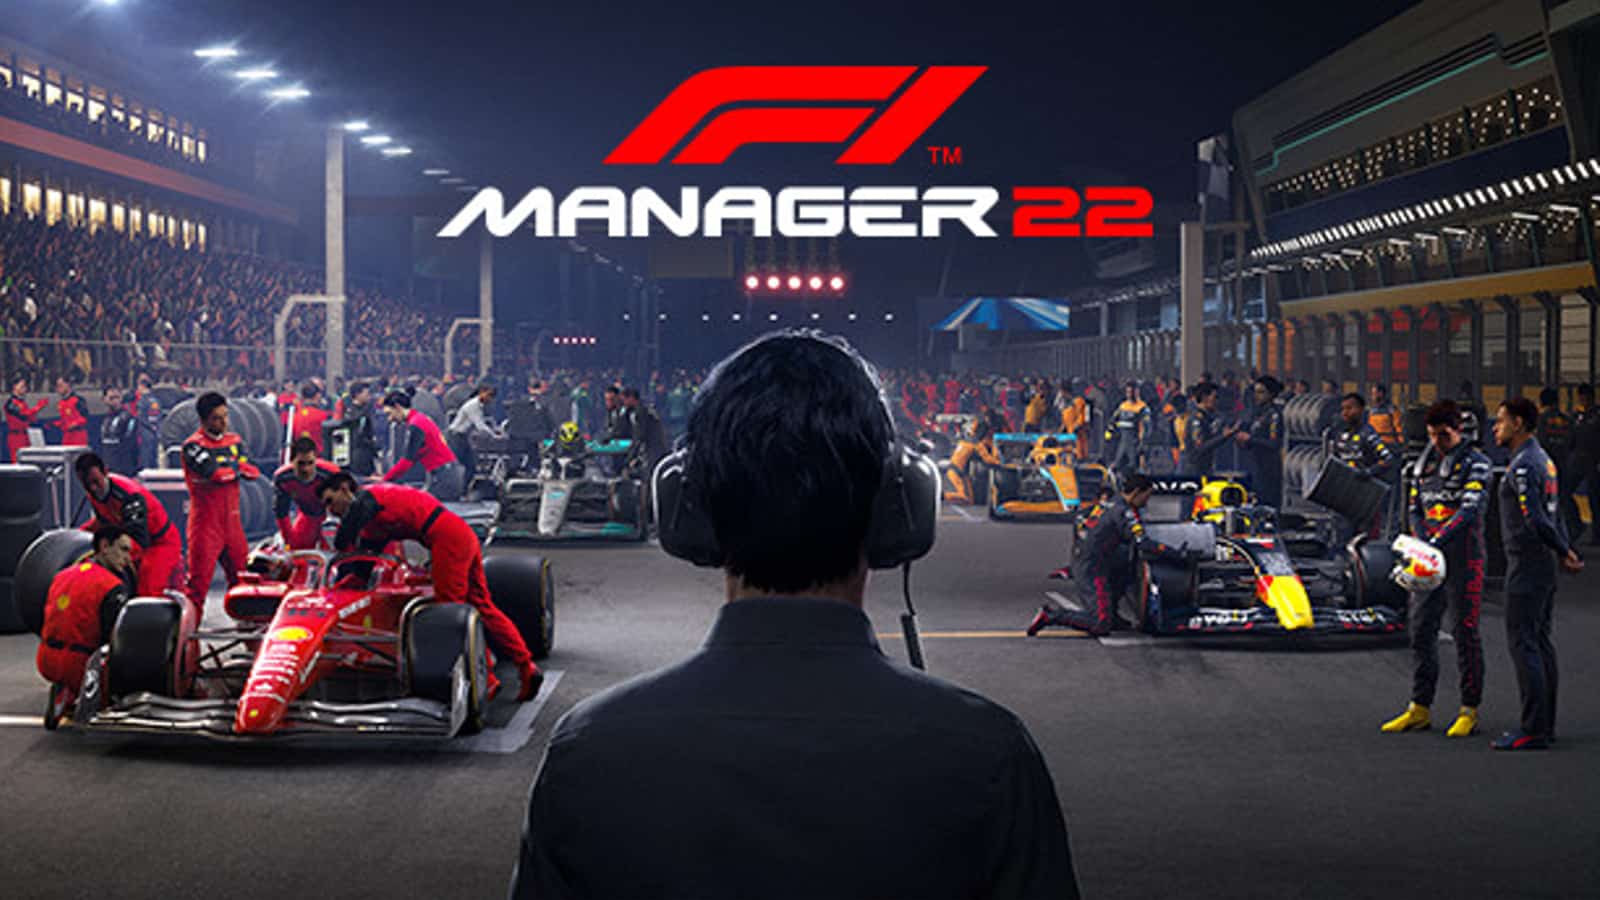 Arte promocional do F1 Manager 2022